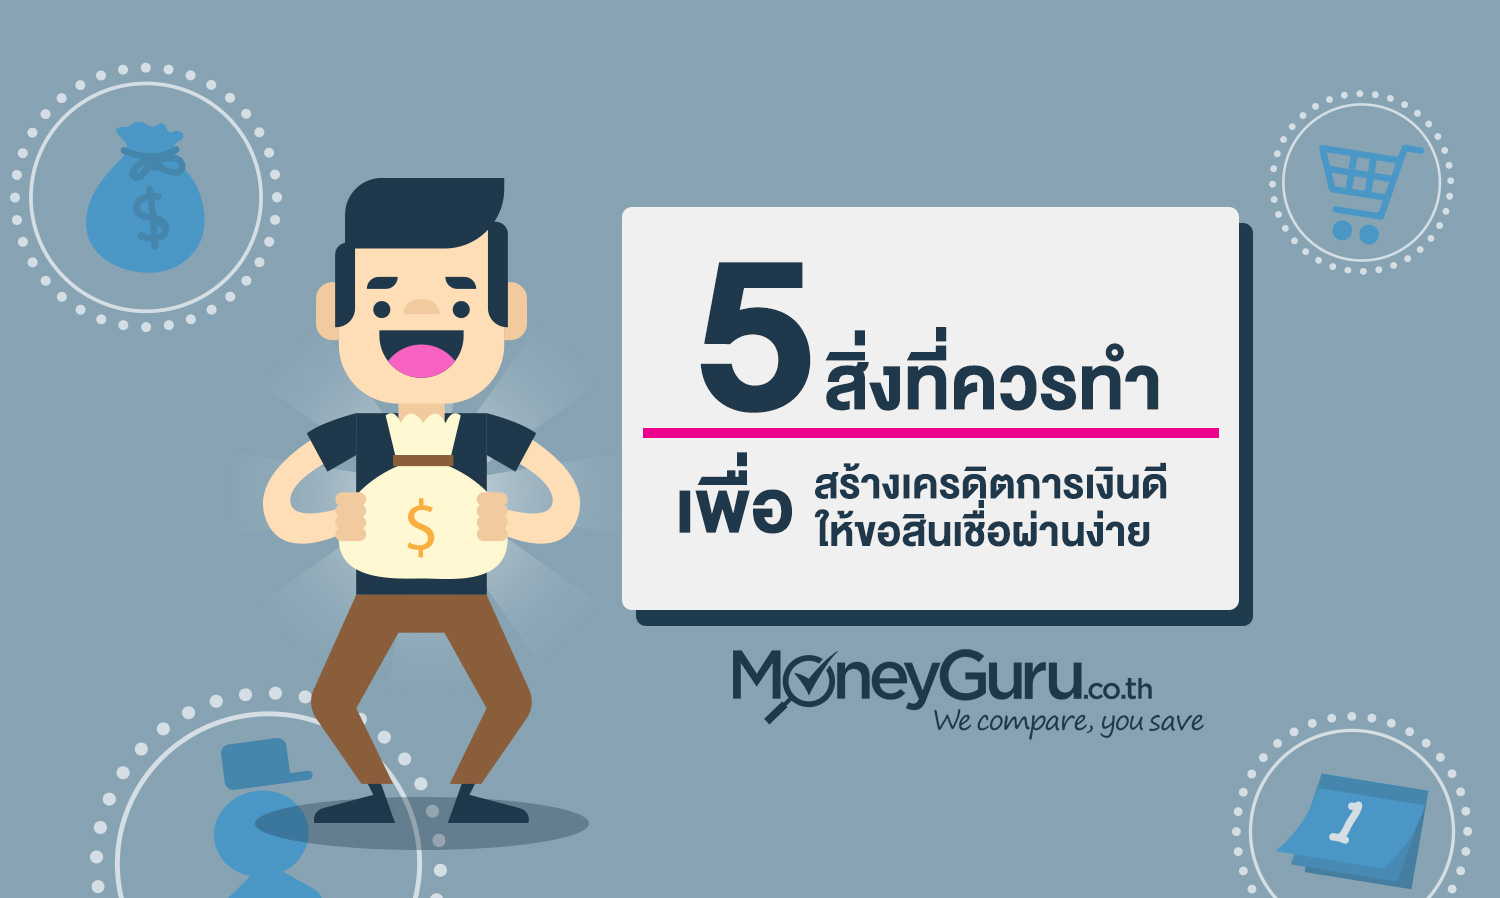 5 สิ่งที่ควรทำเพื่อสร้าง เครดิตการเงินดี เพื่อให้ขอสินเชื่อผ่านง่าย